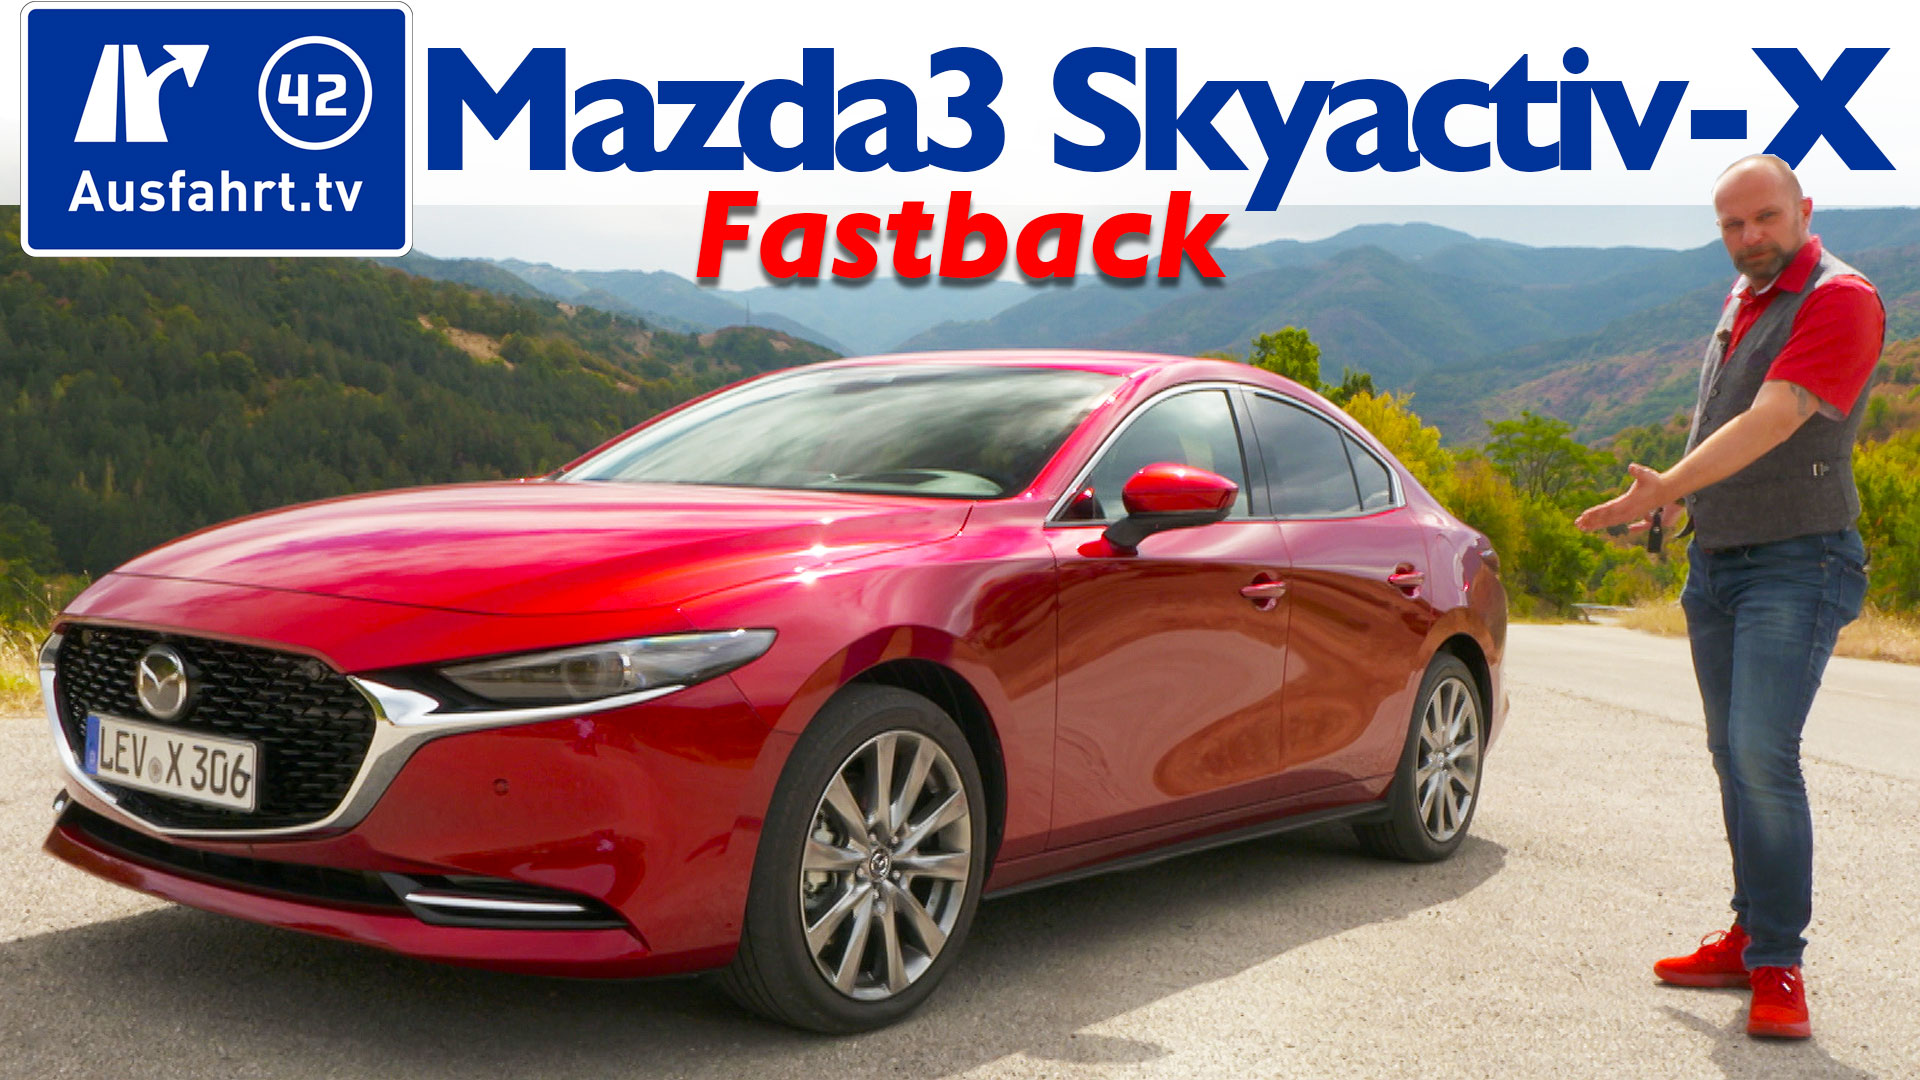 2019 Mazda3 Fastback Skyactiv-X 2.0 M Hybrid –